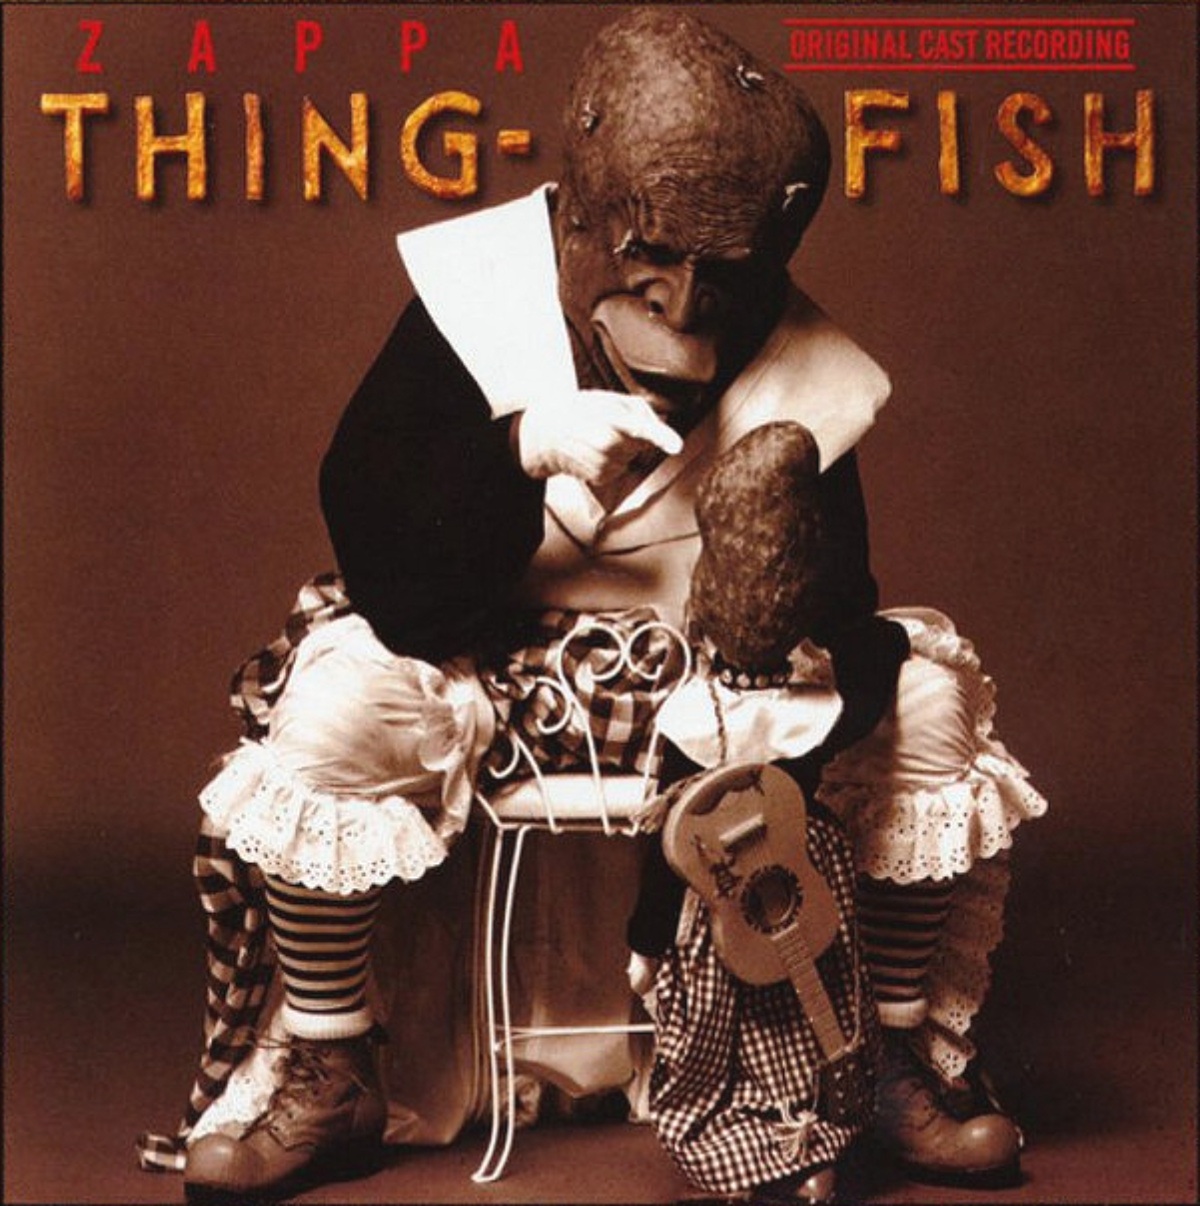 Frank Zappa: Thing-Fish (capa do álbum)